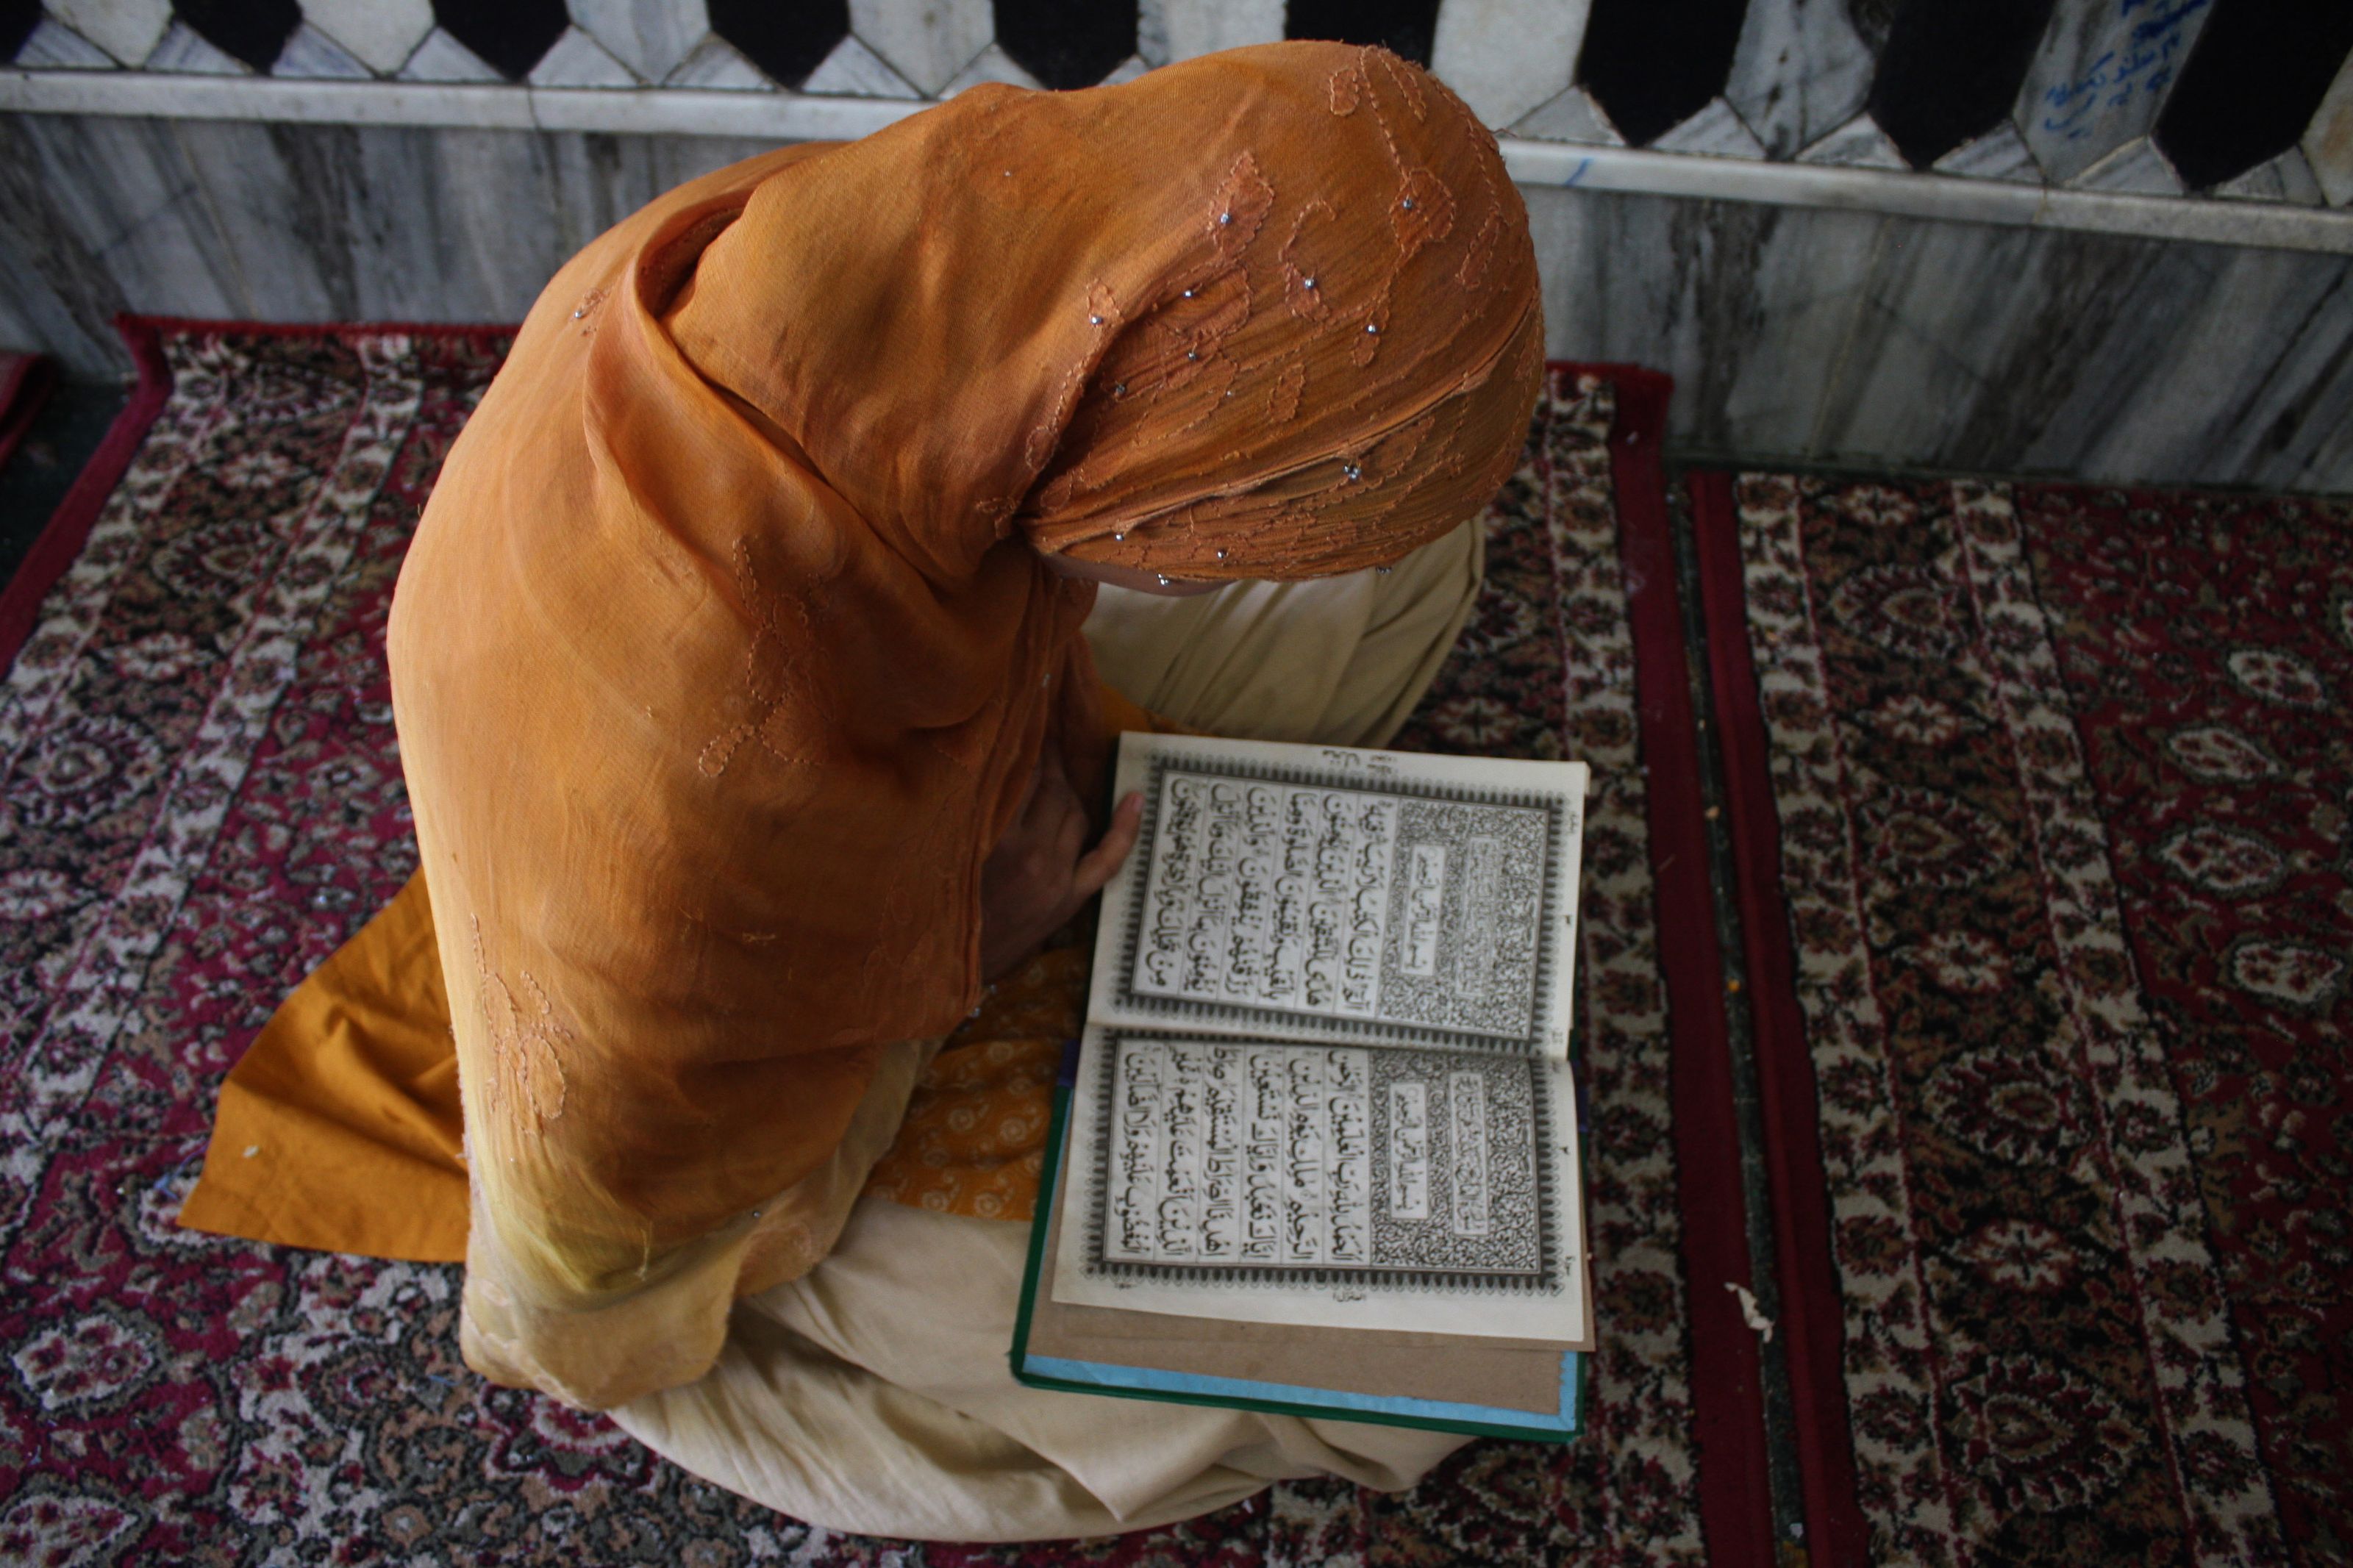 Читать коран лежа. Читает Коран лежа. Коврик для намаза свернутый. Лампа читающая Коран.